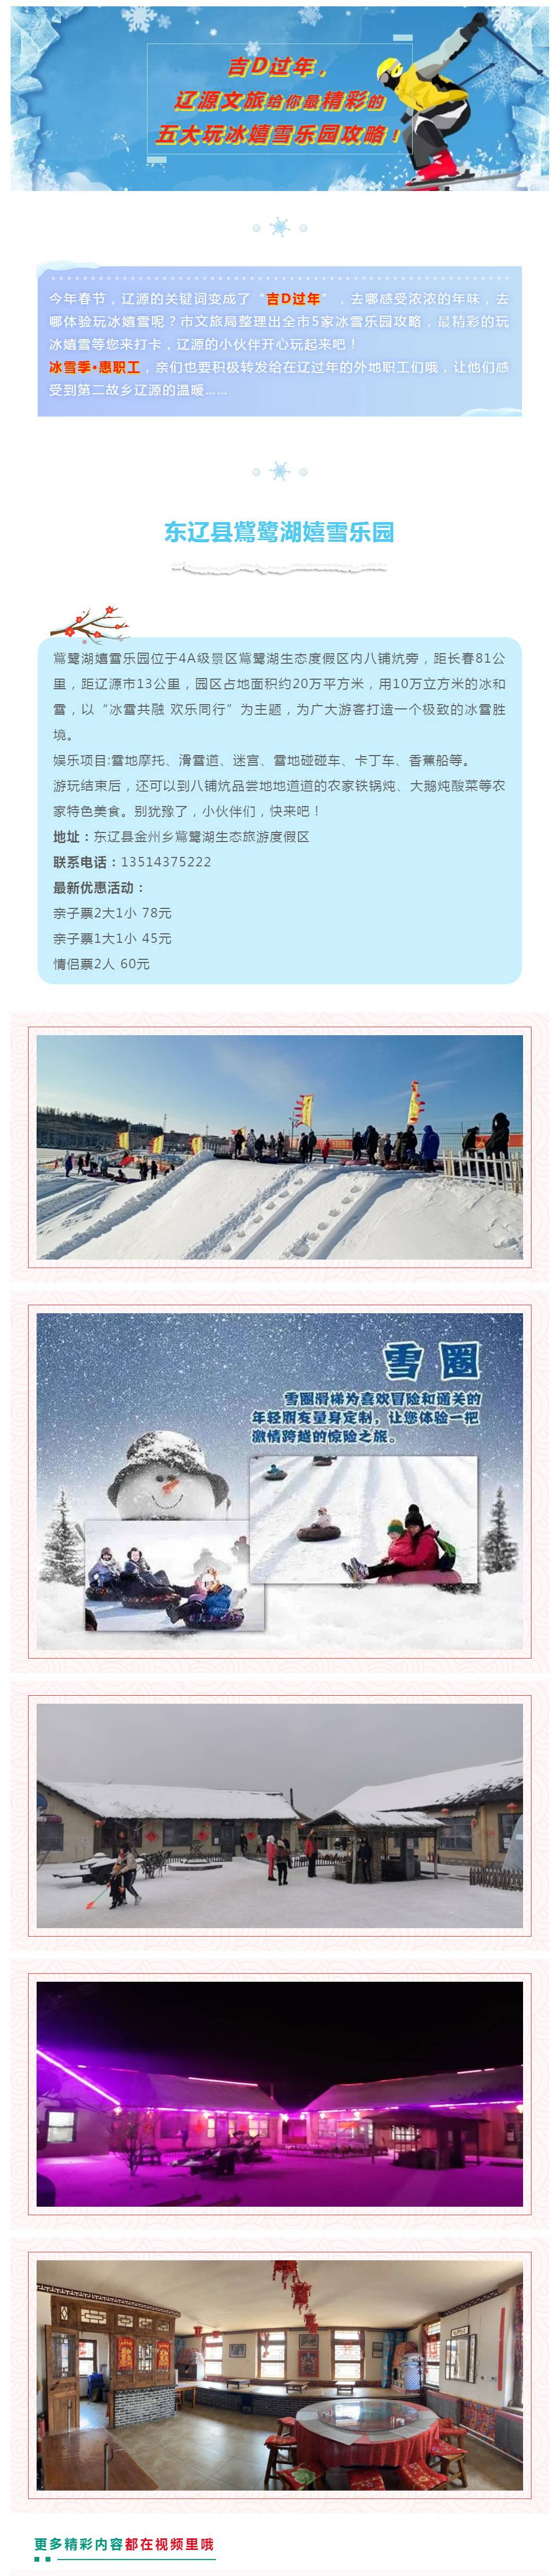 吉D过年，辽源文旅给你最精彩的五大玩冰嬉雪乐园攻略！